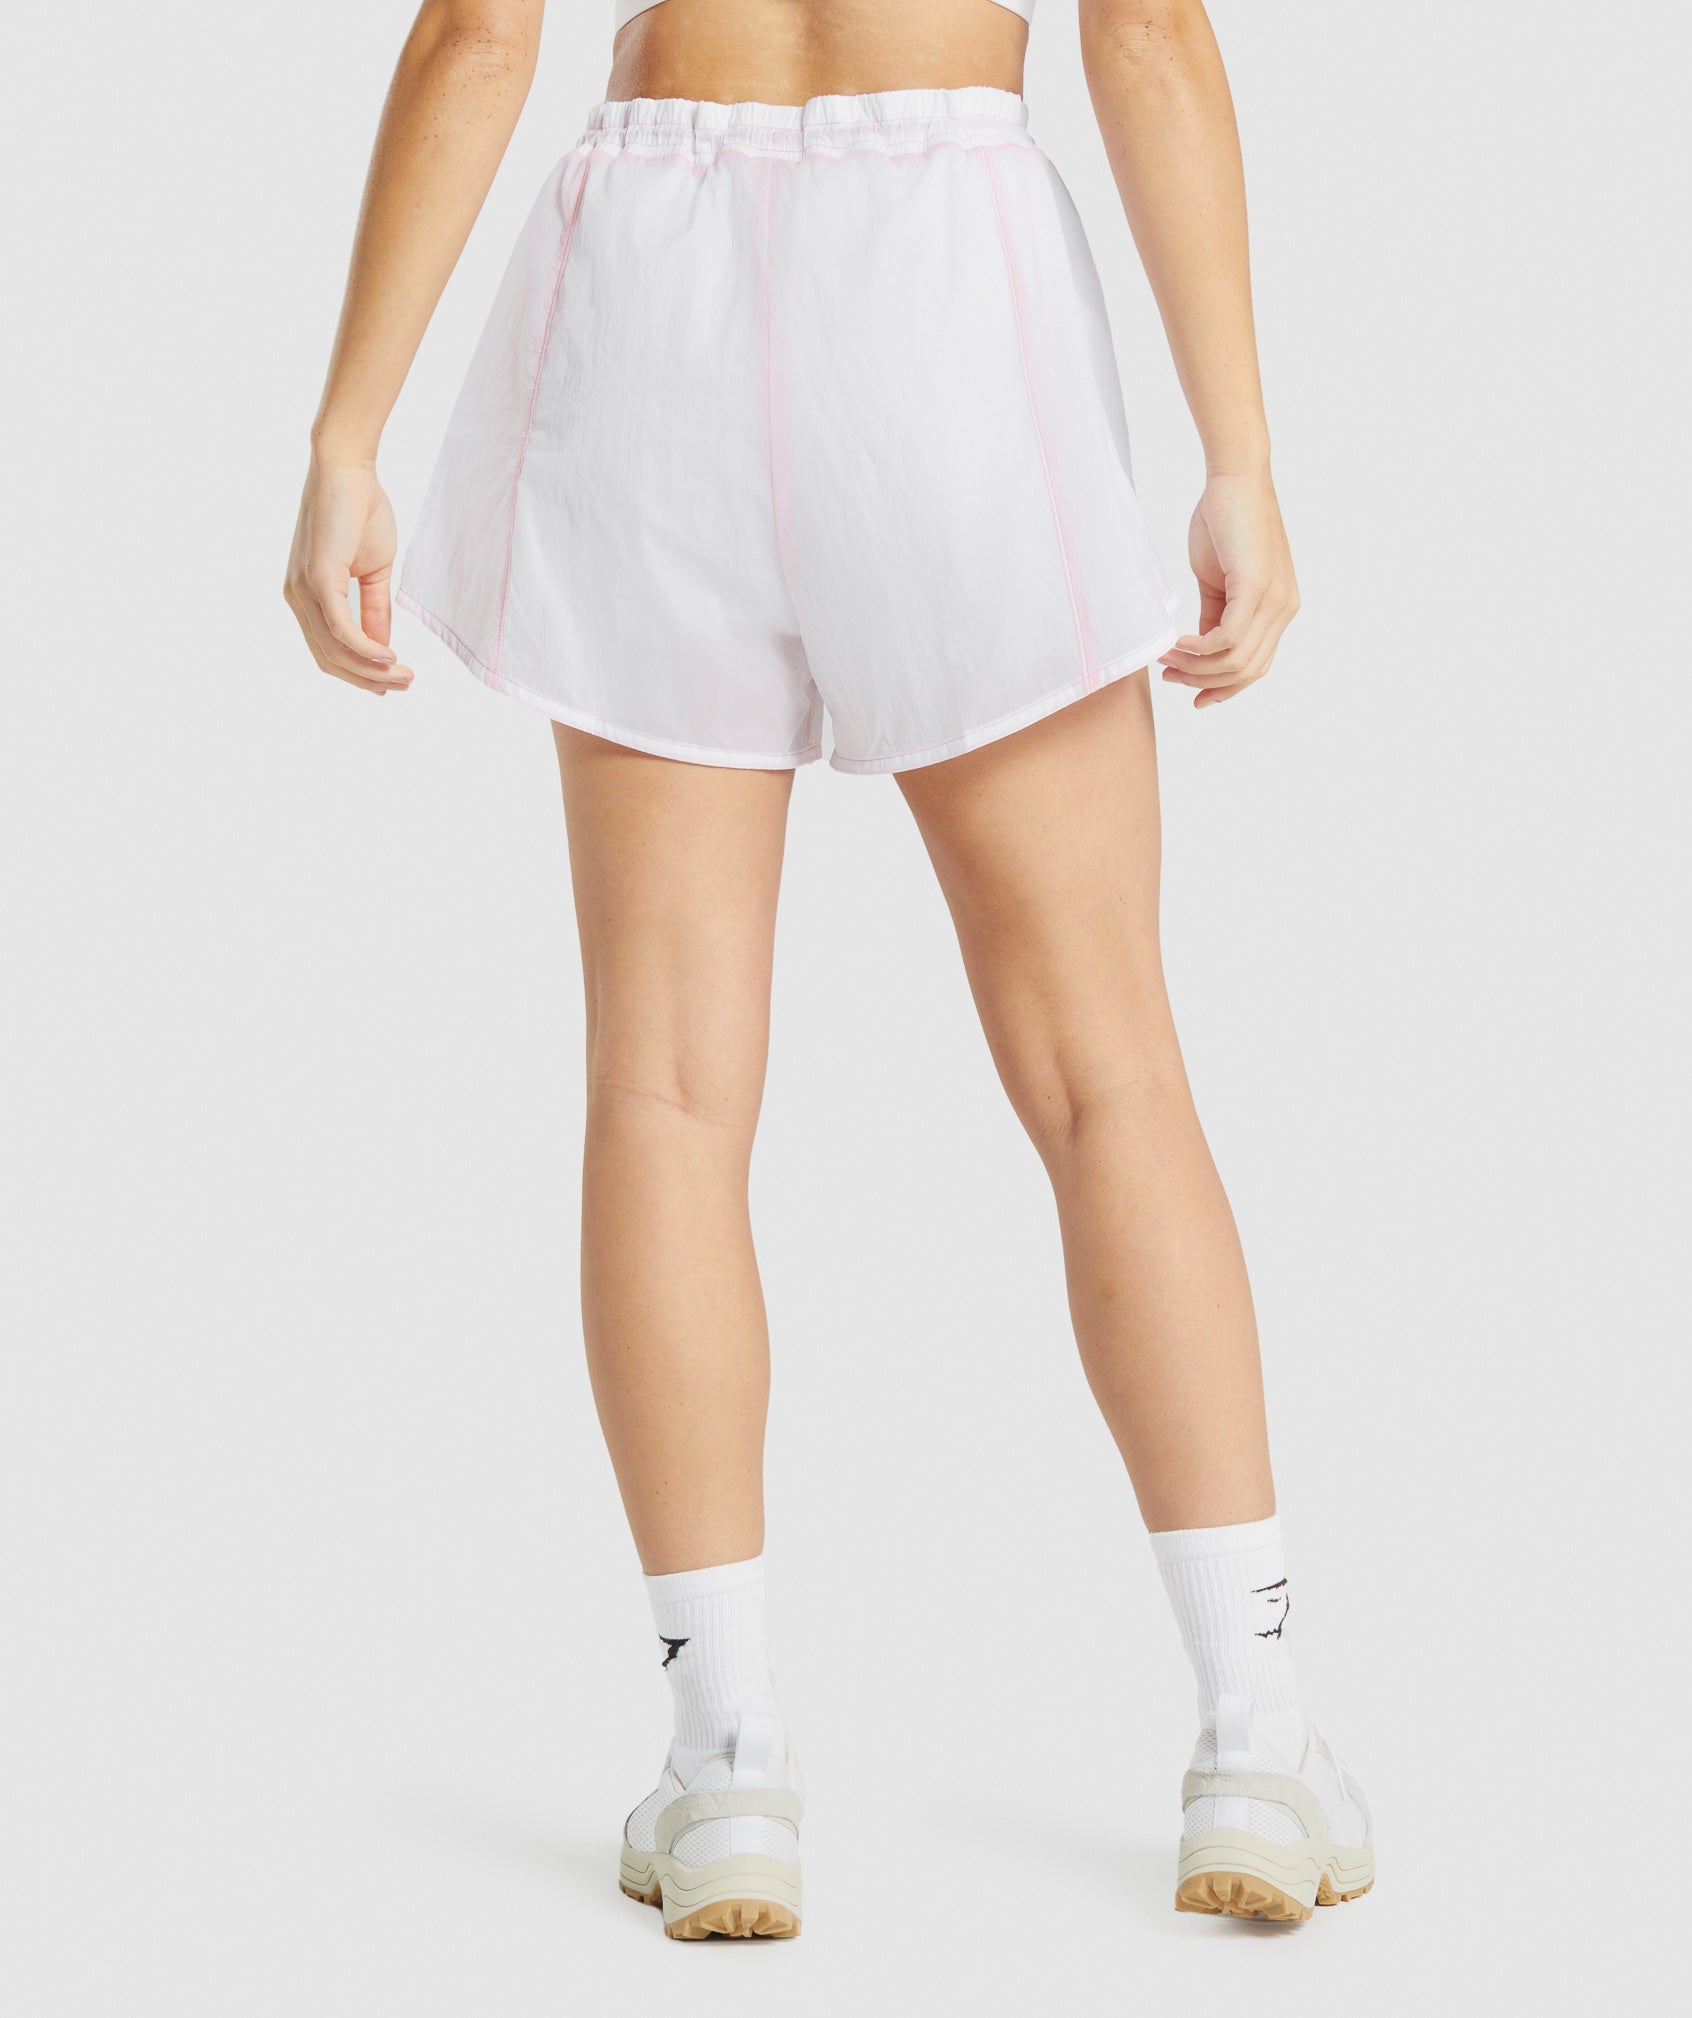 DZ, Flux 2-in-1 Shorts - White, Workout Shorts Women